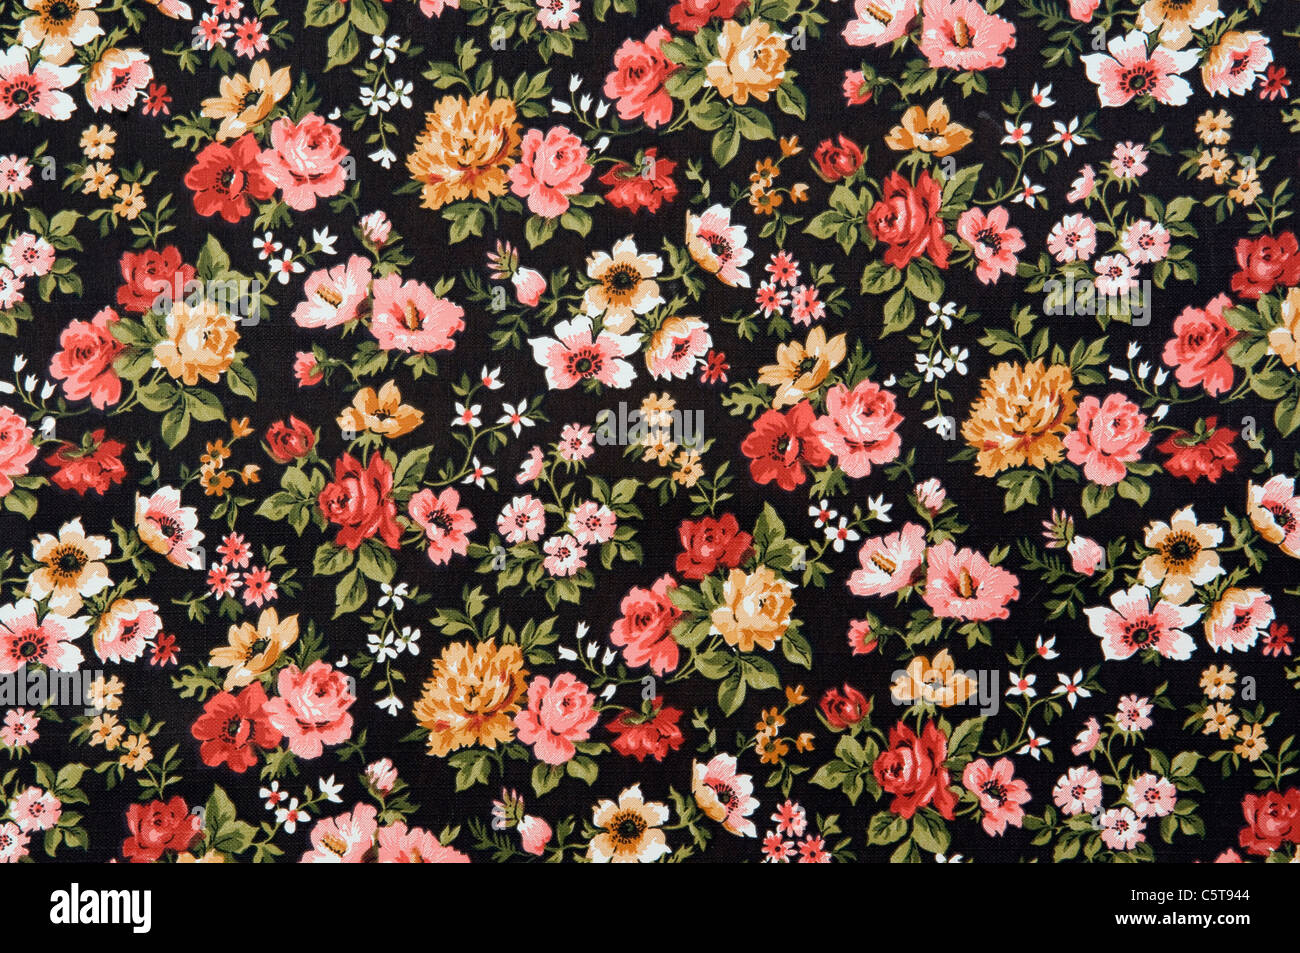 Floral wallpaper, full frame Stock Photo